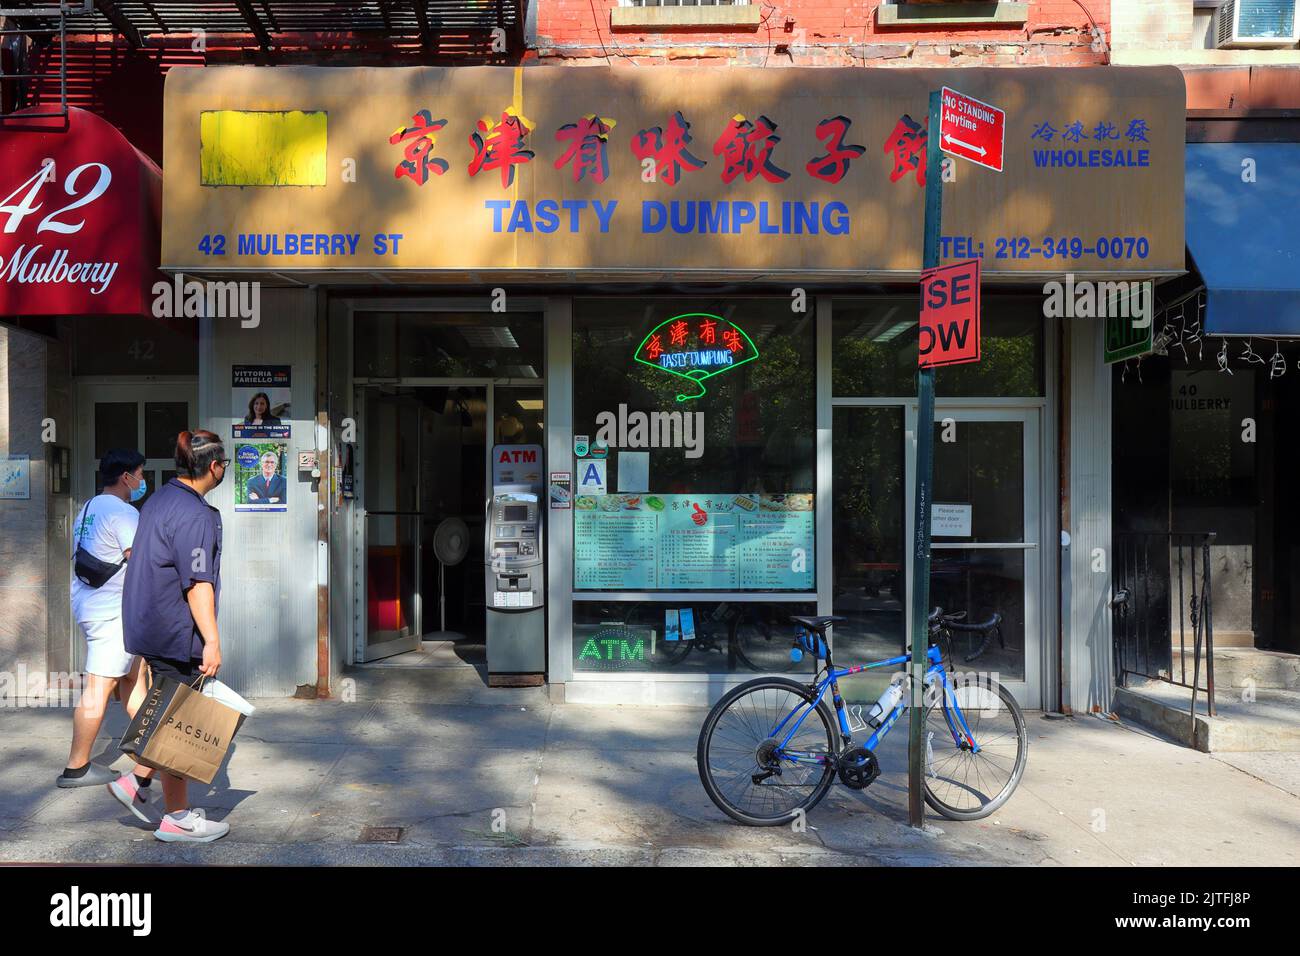 Tasty Dumpling, 42 Mulberry St, New York, NYC Schaufensterfoto eines frittierten Knödelladens in Manhattan, Chinatown. Stockfoto